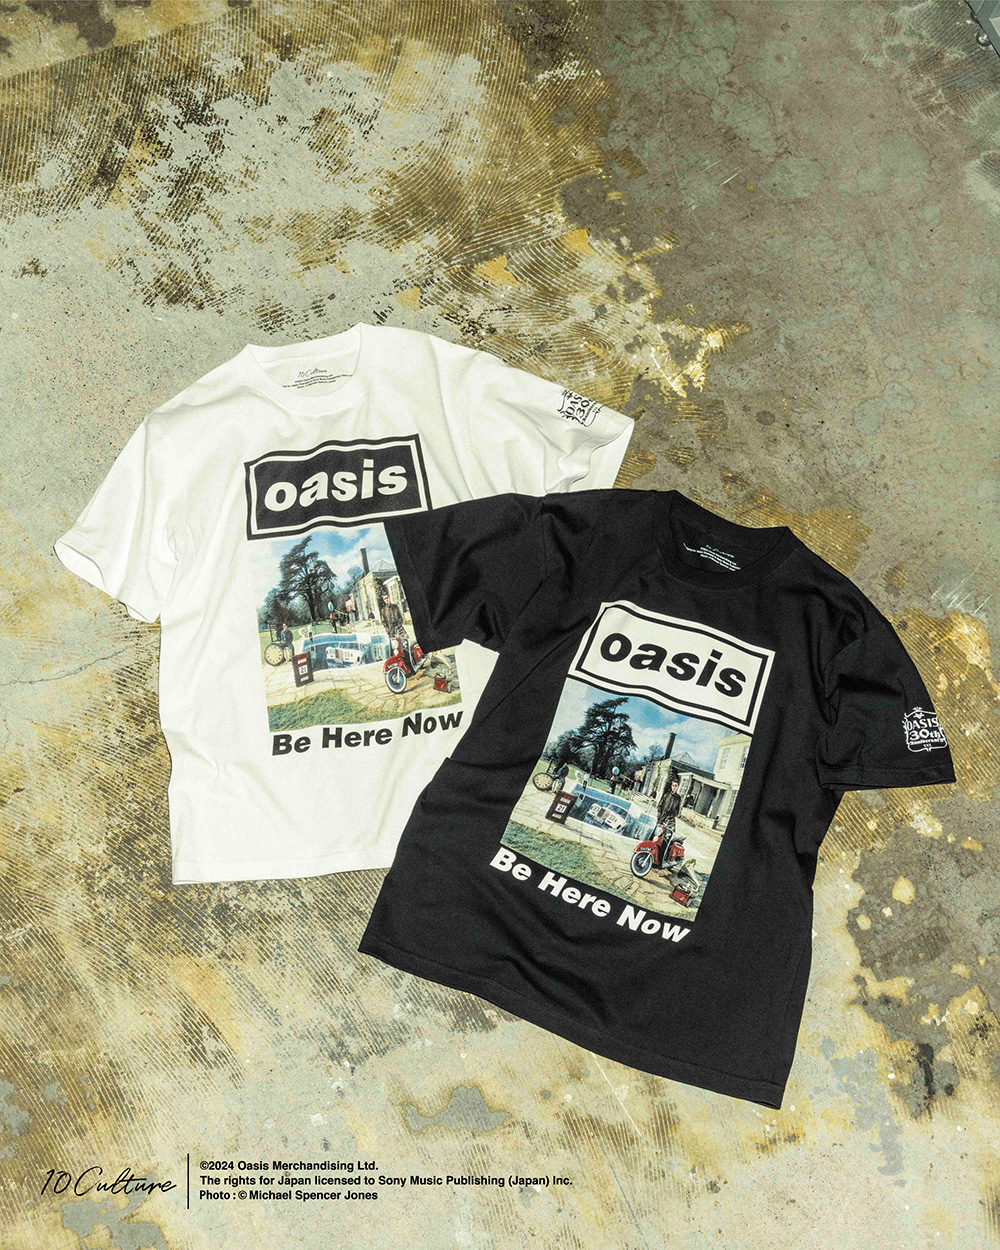 「oasis」と10のカルチャーをバックグラウンドにした「10Culture」×「ADAM ET ROPE’」新作Tシャツが2024年 7月下旬 発売 (オアシス アダム エ ロペ)